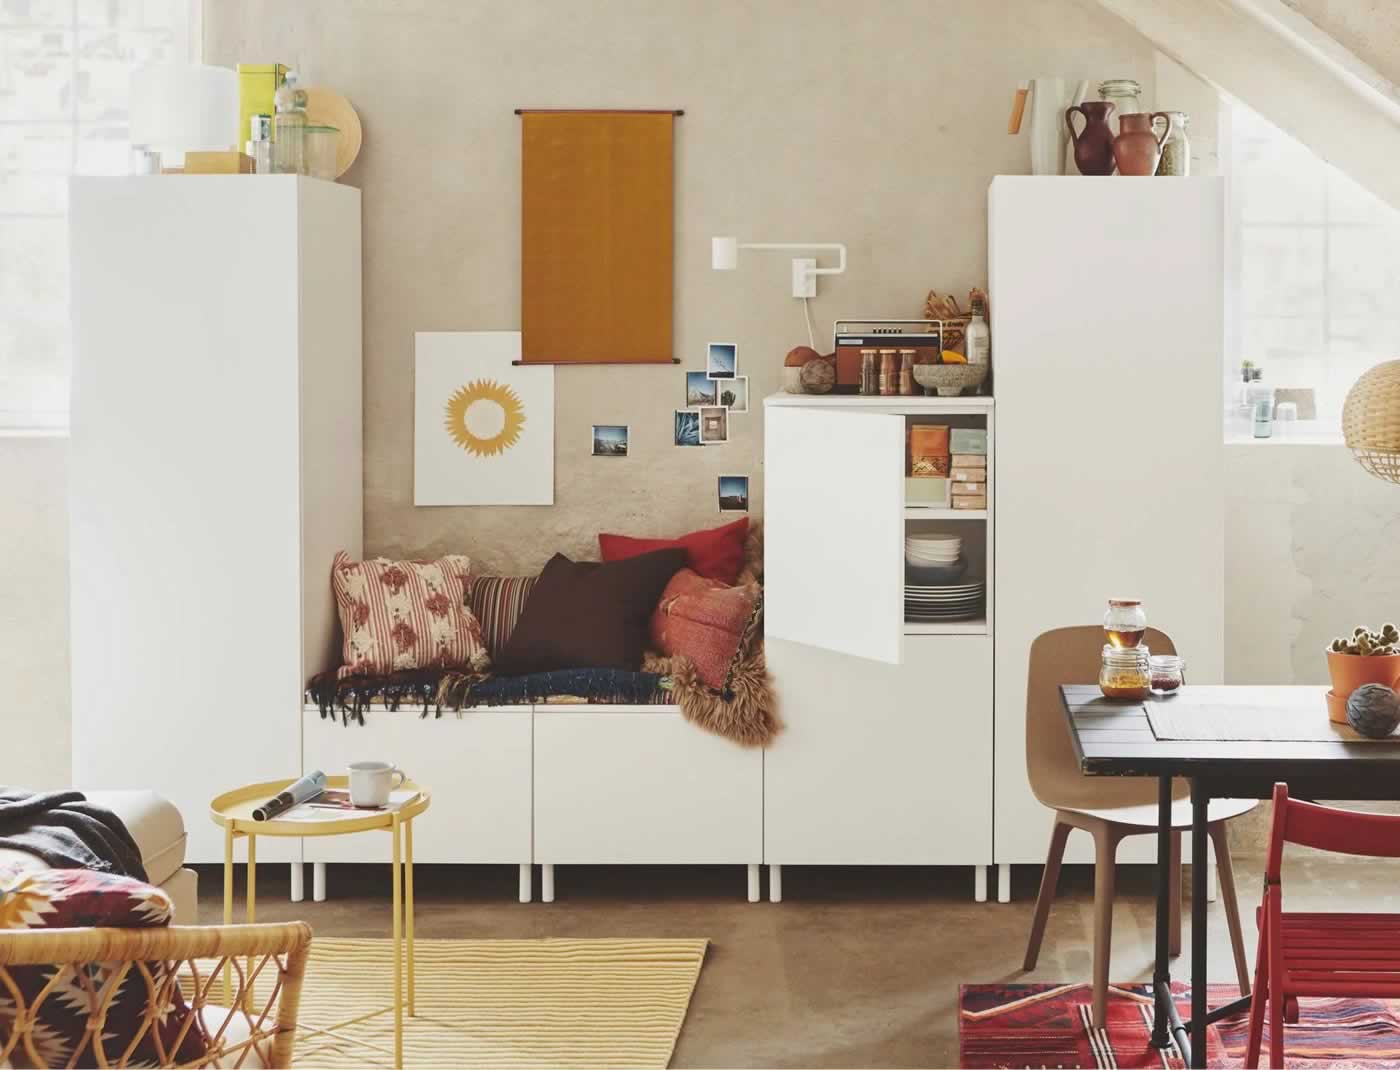 IKEA İyi Fikirler - PLATSA dolap sistemleri ile küçük alanlar için esnek çözümler